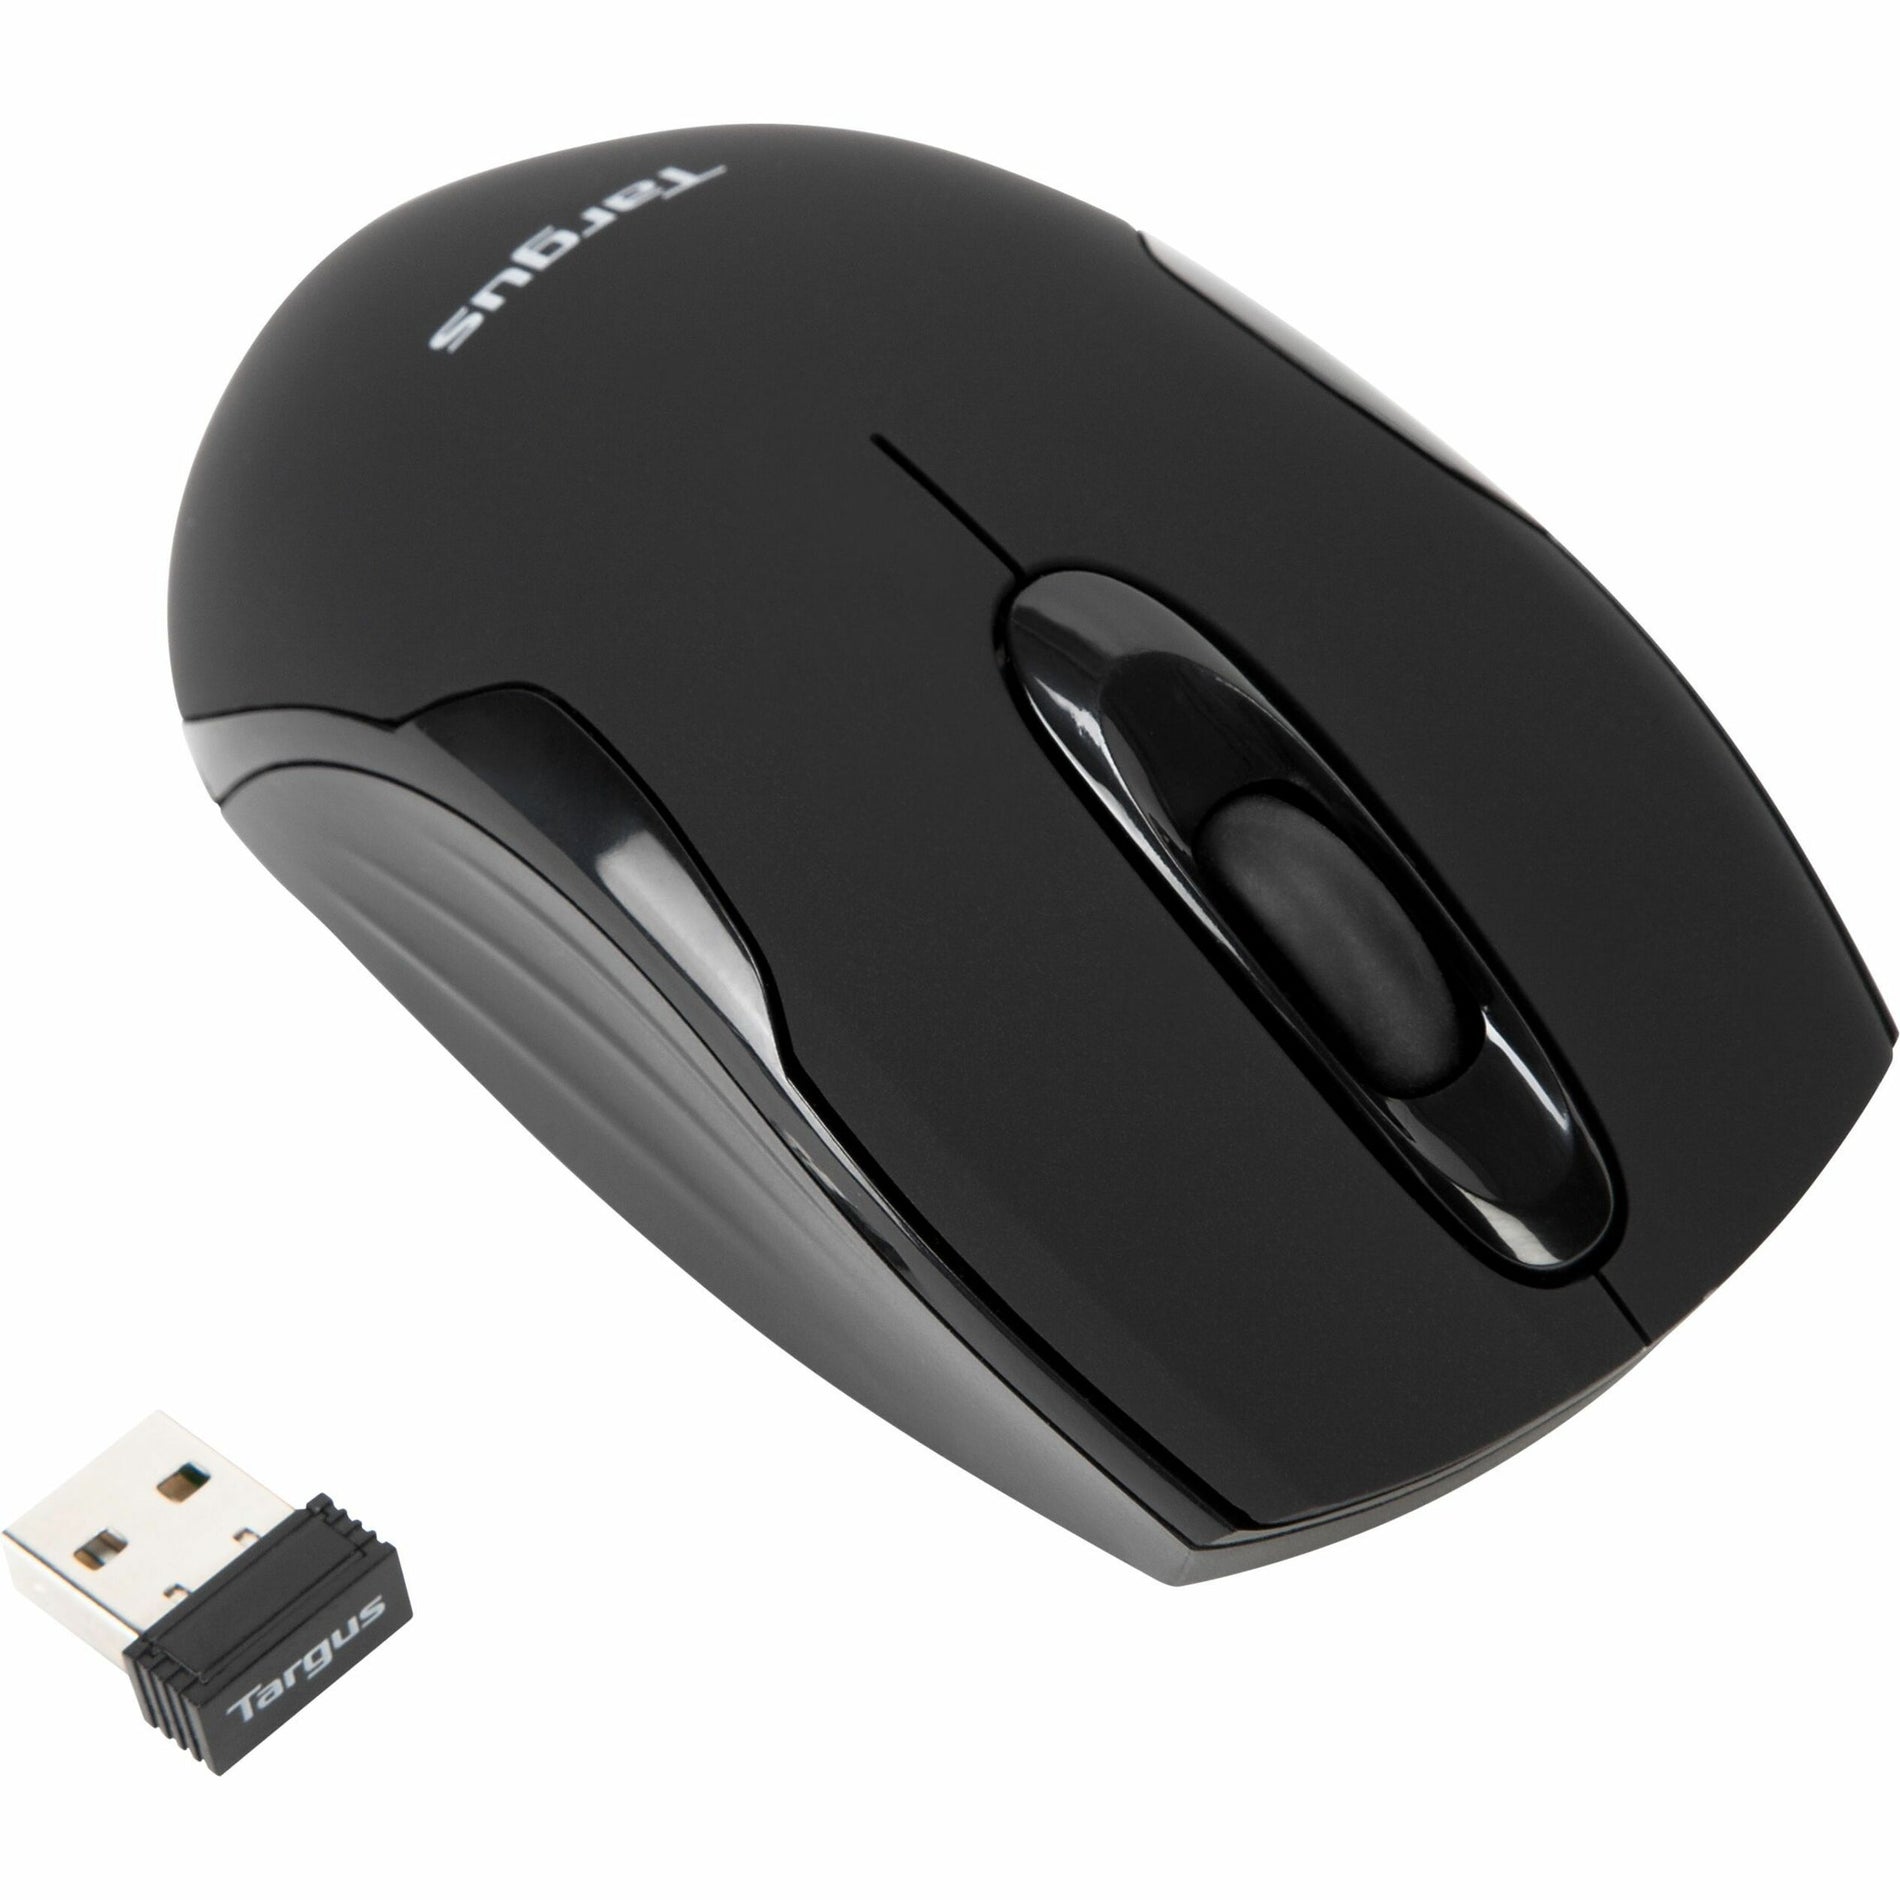 Targus AMW575TT W575 Wireless Mouse, Radio Frequency, 1600 dpi, USB Receiver, 1 Year Warranty